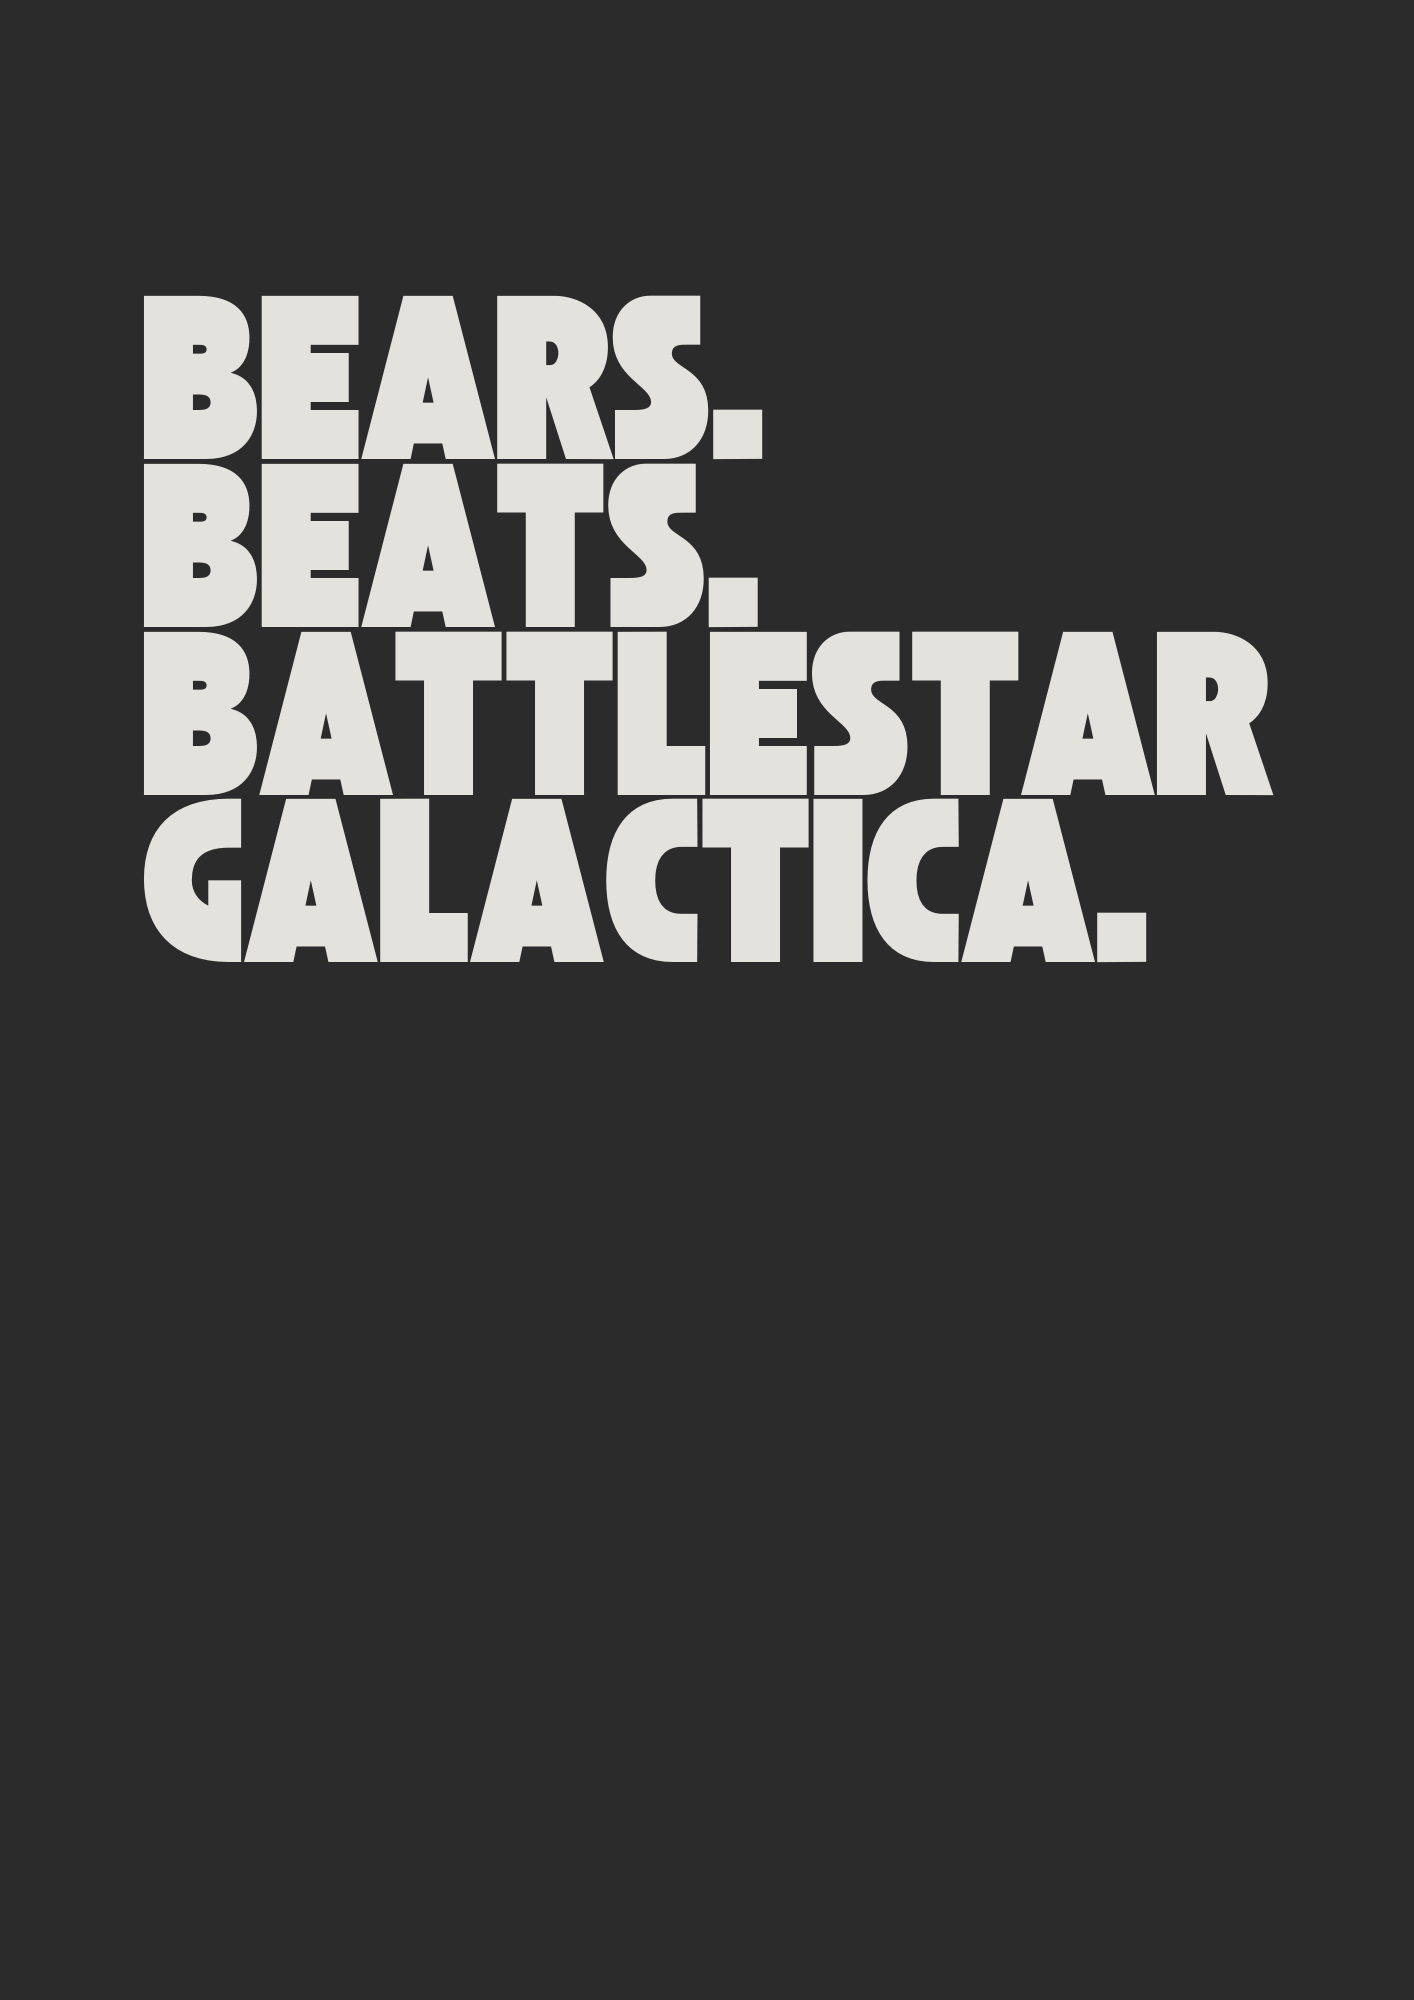 Bear. Beats. Battlestar Galactica. Poster